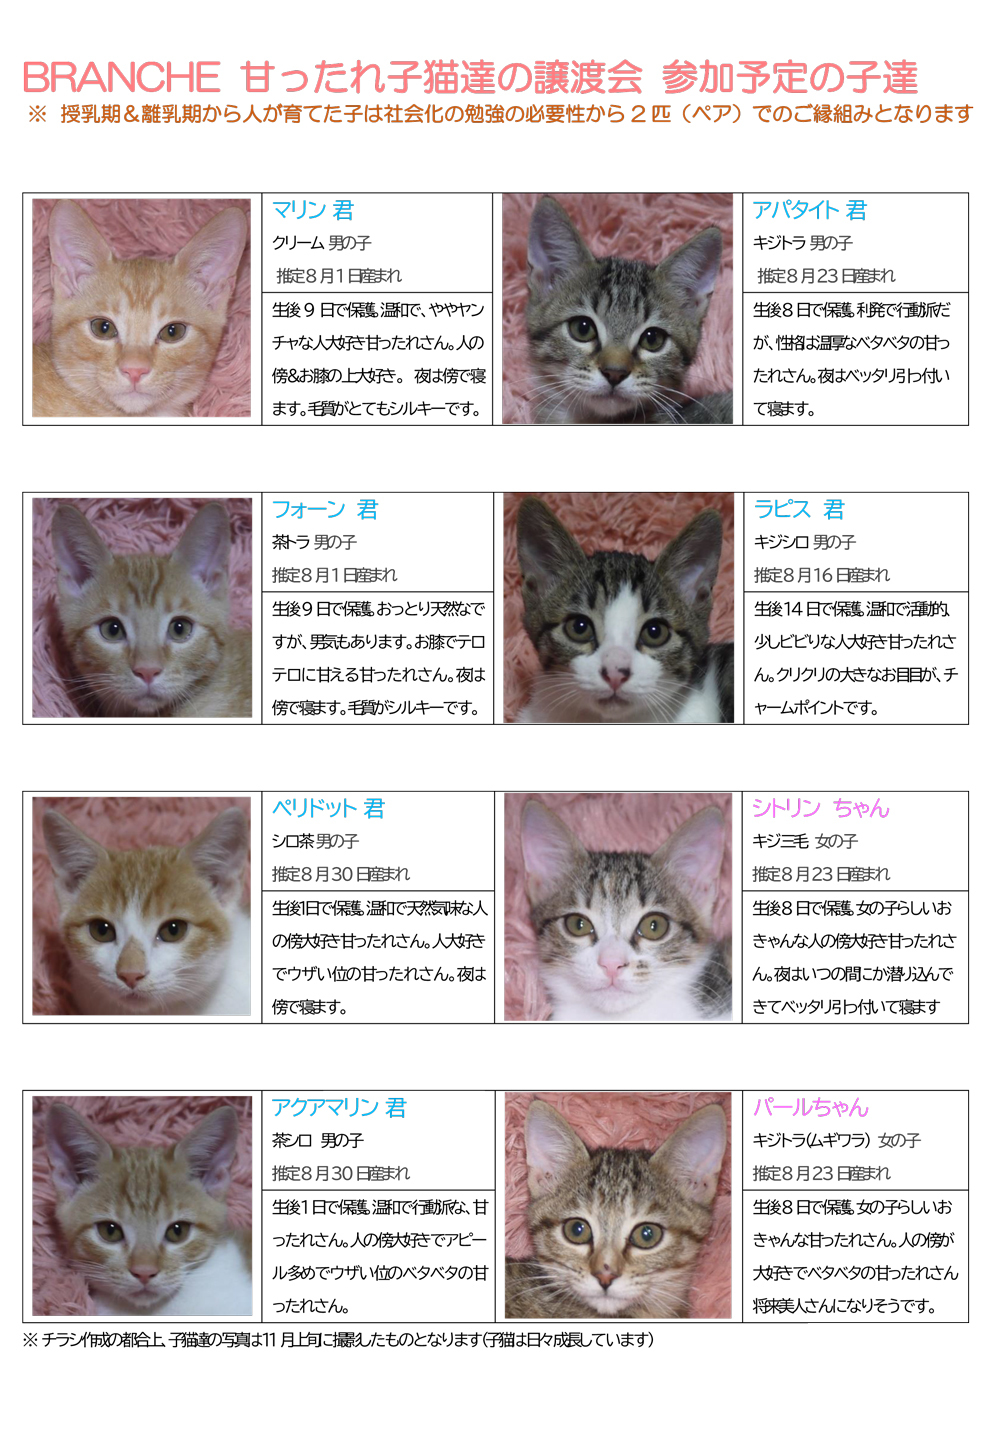 チラシ-子猫紹介2022年12月-1ページ目